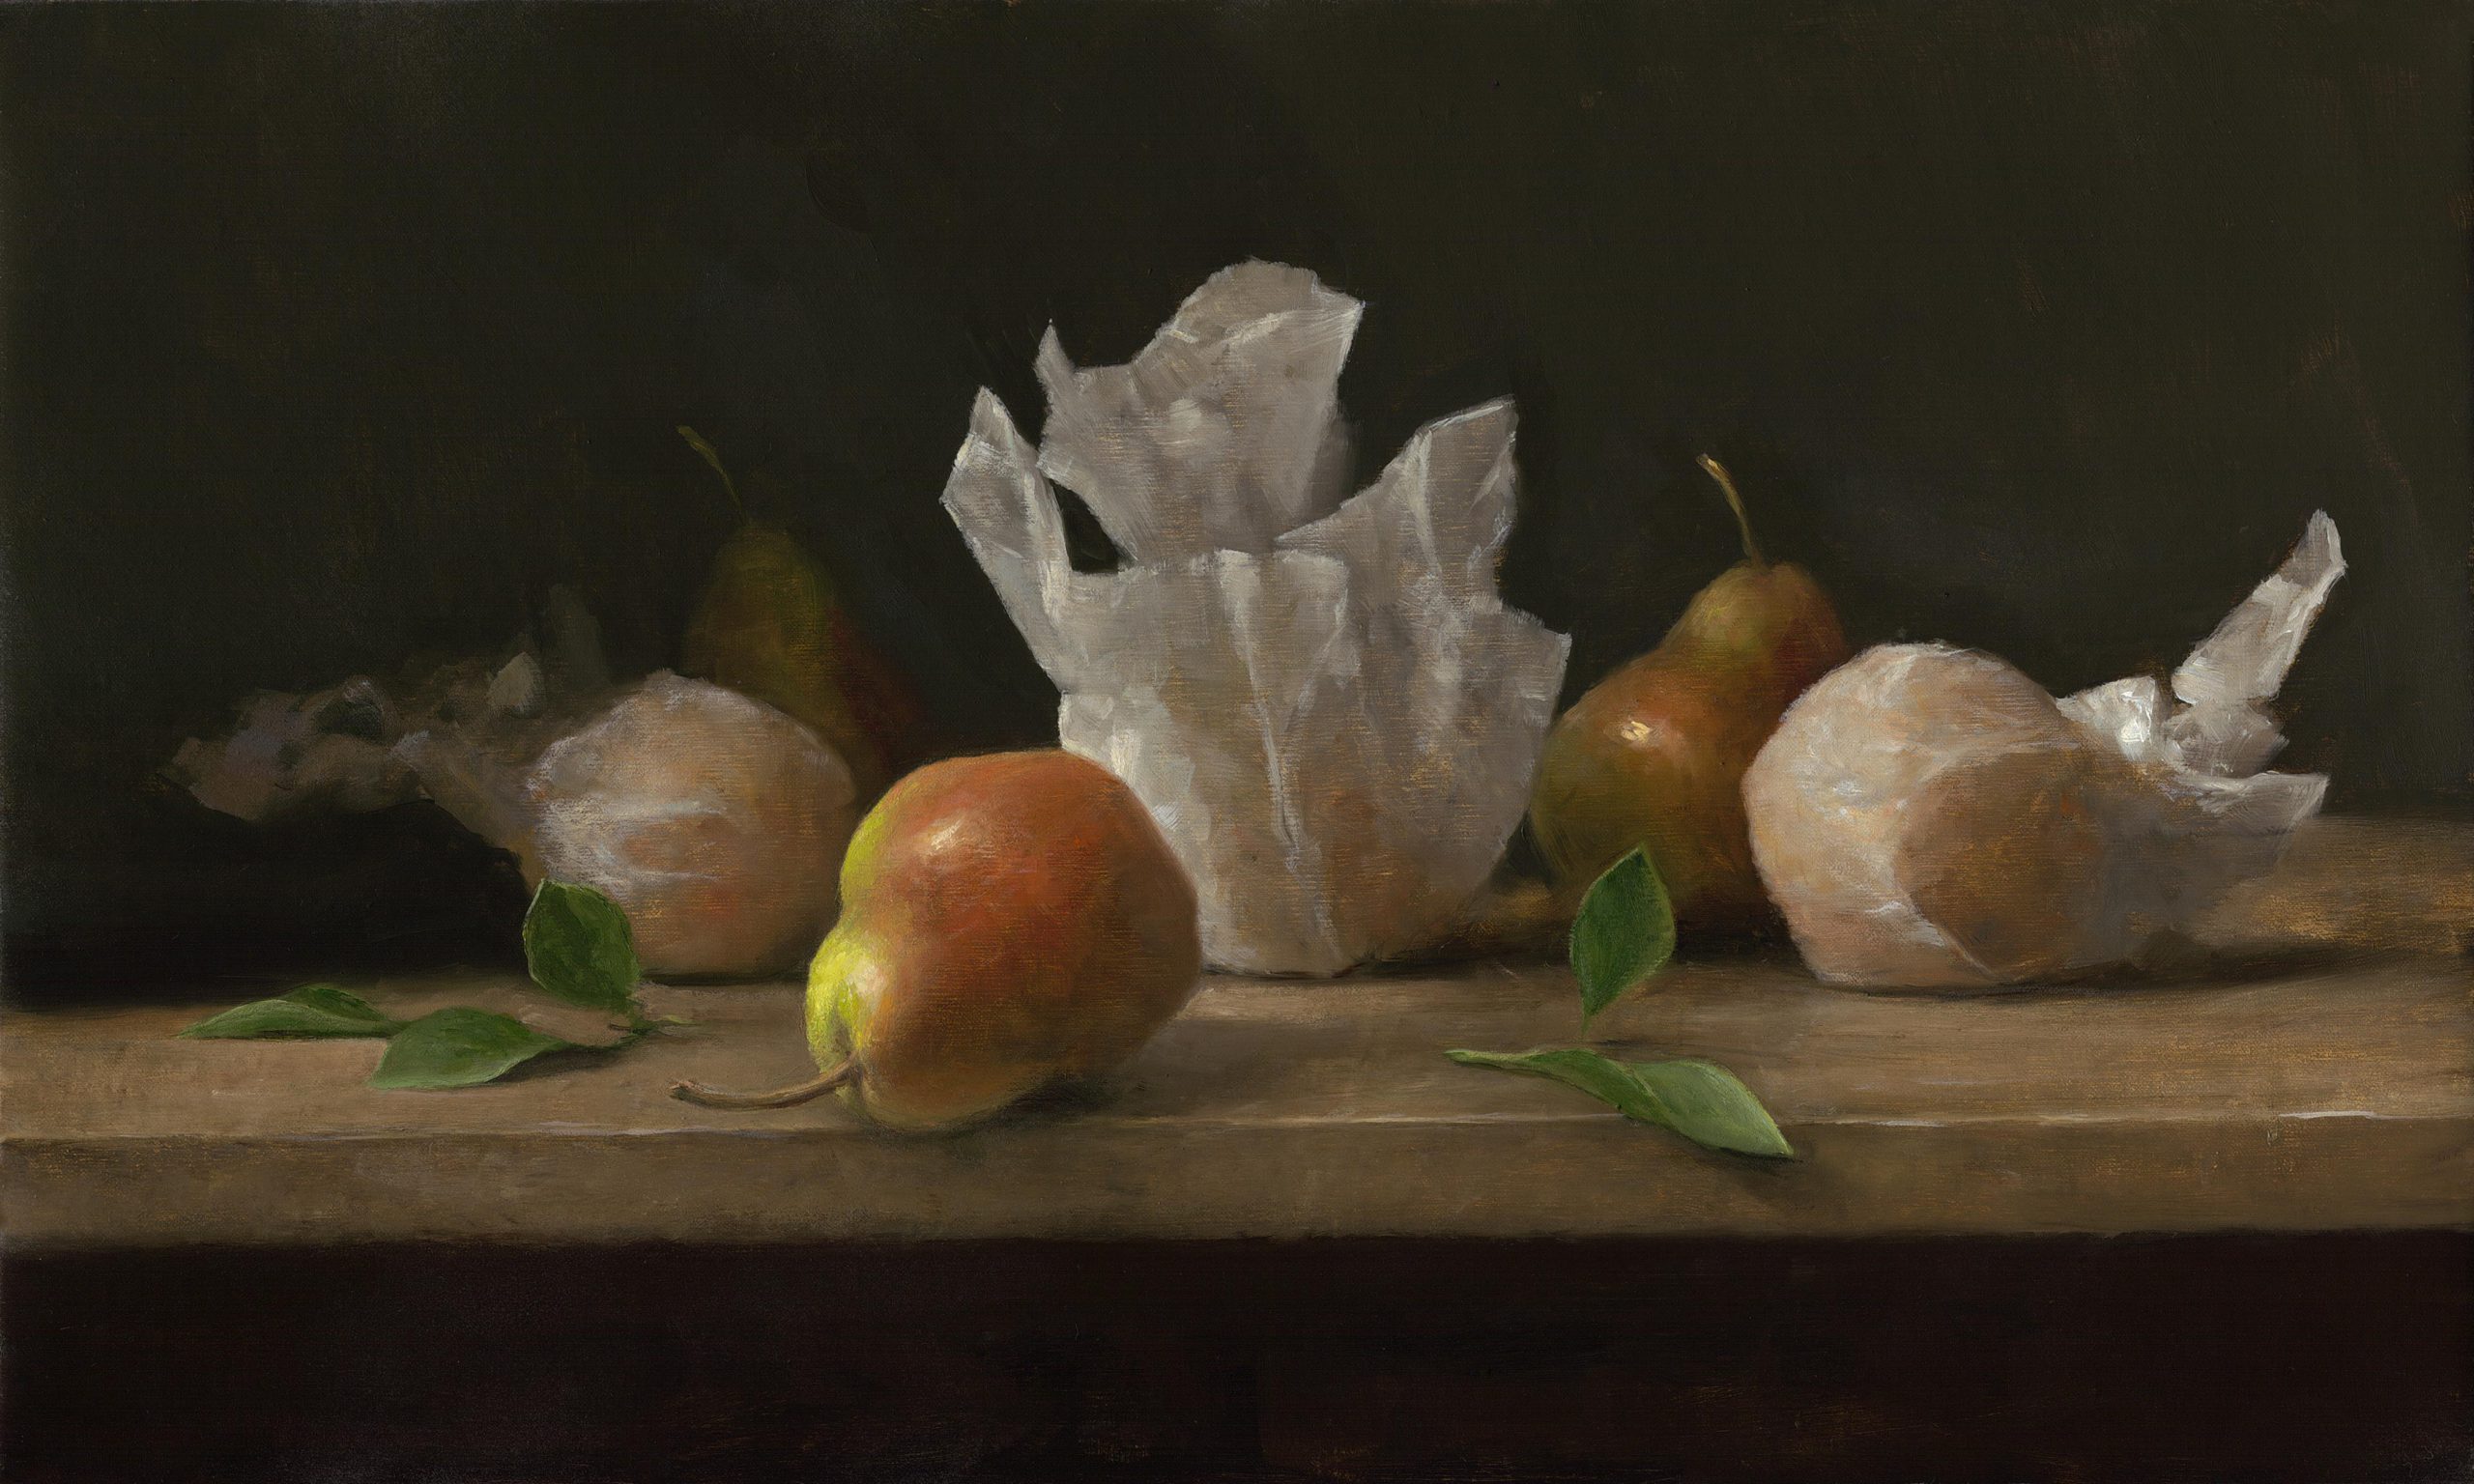 Sarah Lamb - Oranges and Pears